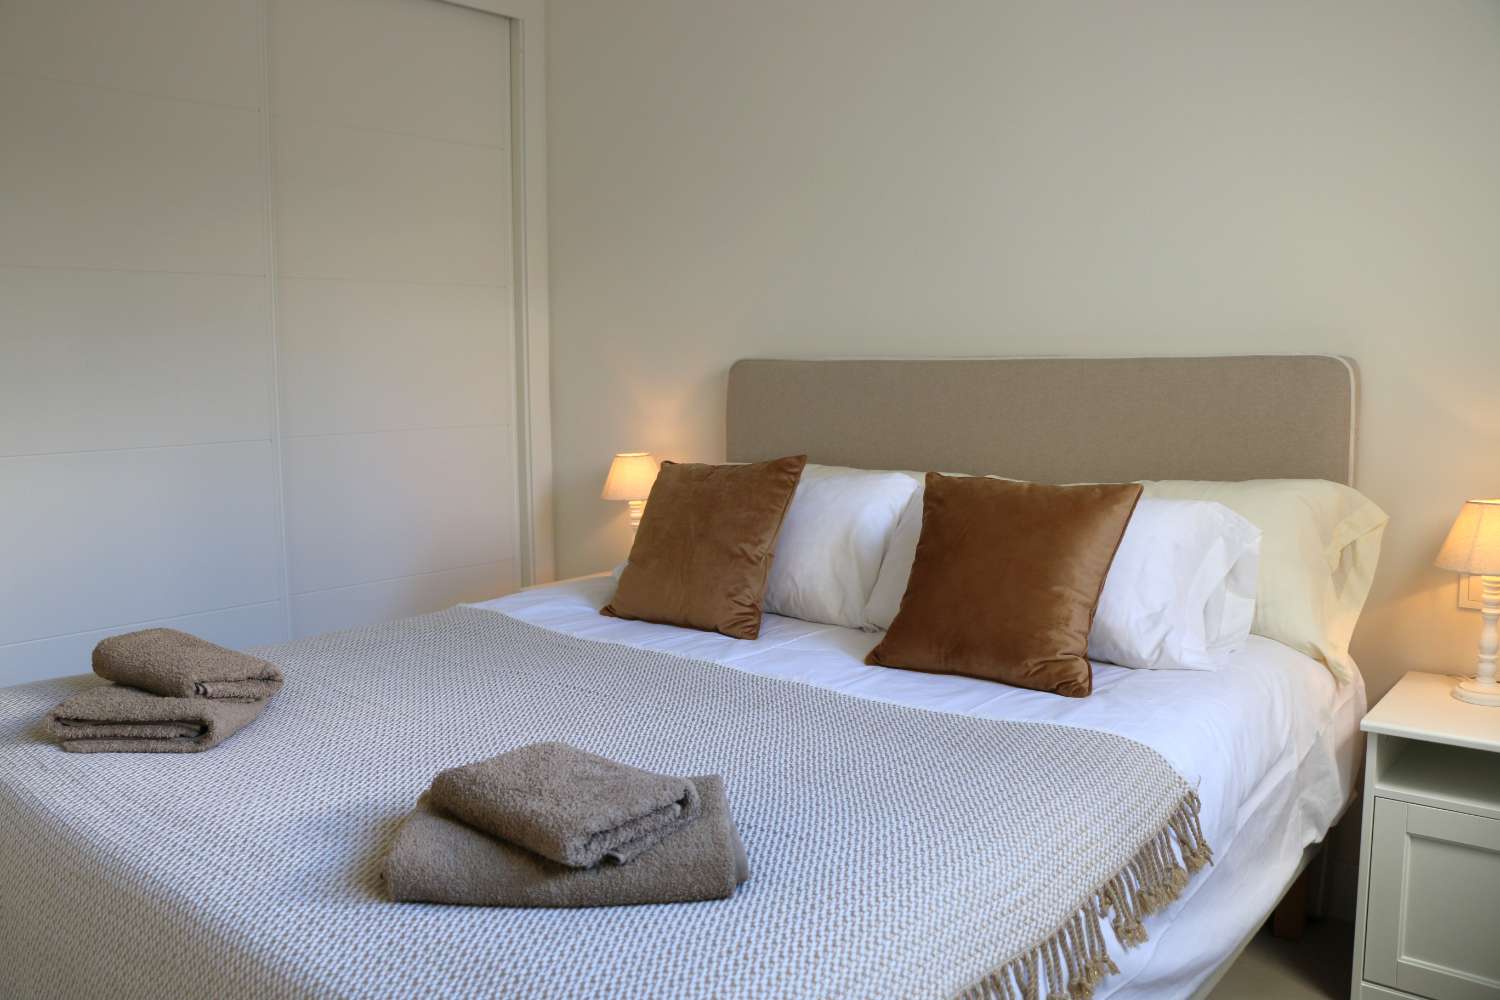 Nouvel appartement luxueusement fini dans un complexe à petite échelle pour de merveilleuses vacances à la plage à Nerja, dans le sud de l’Espagne.